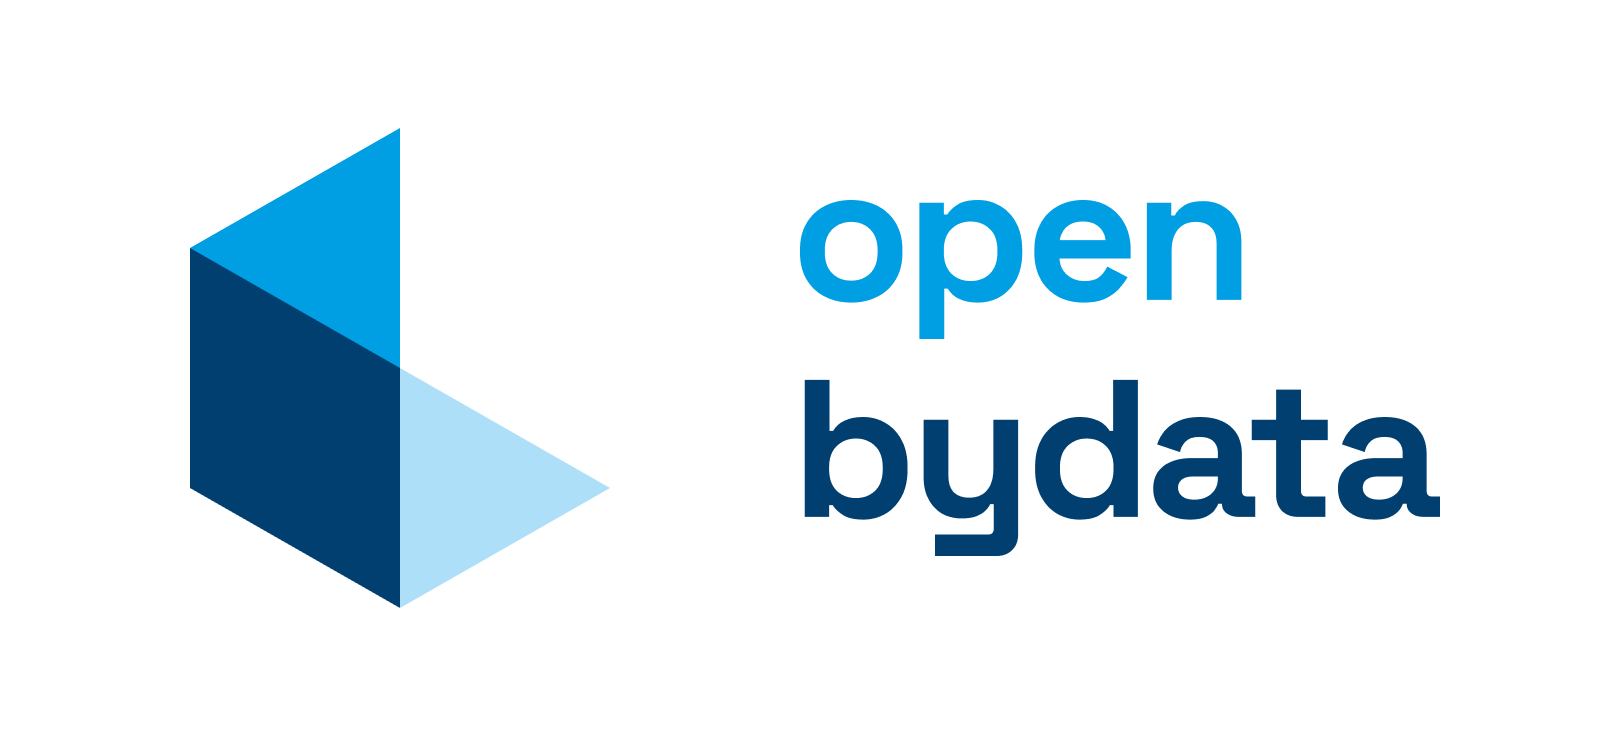 Zur externen Seite OpenData Bayern unter open.bydata.de/